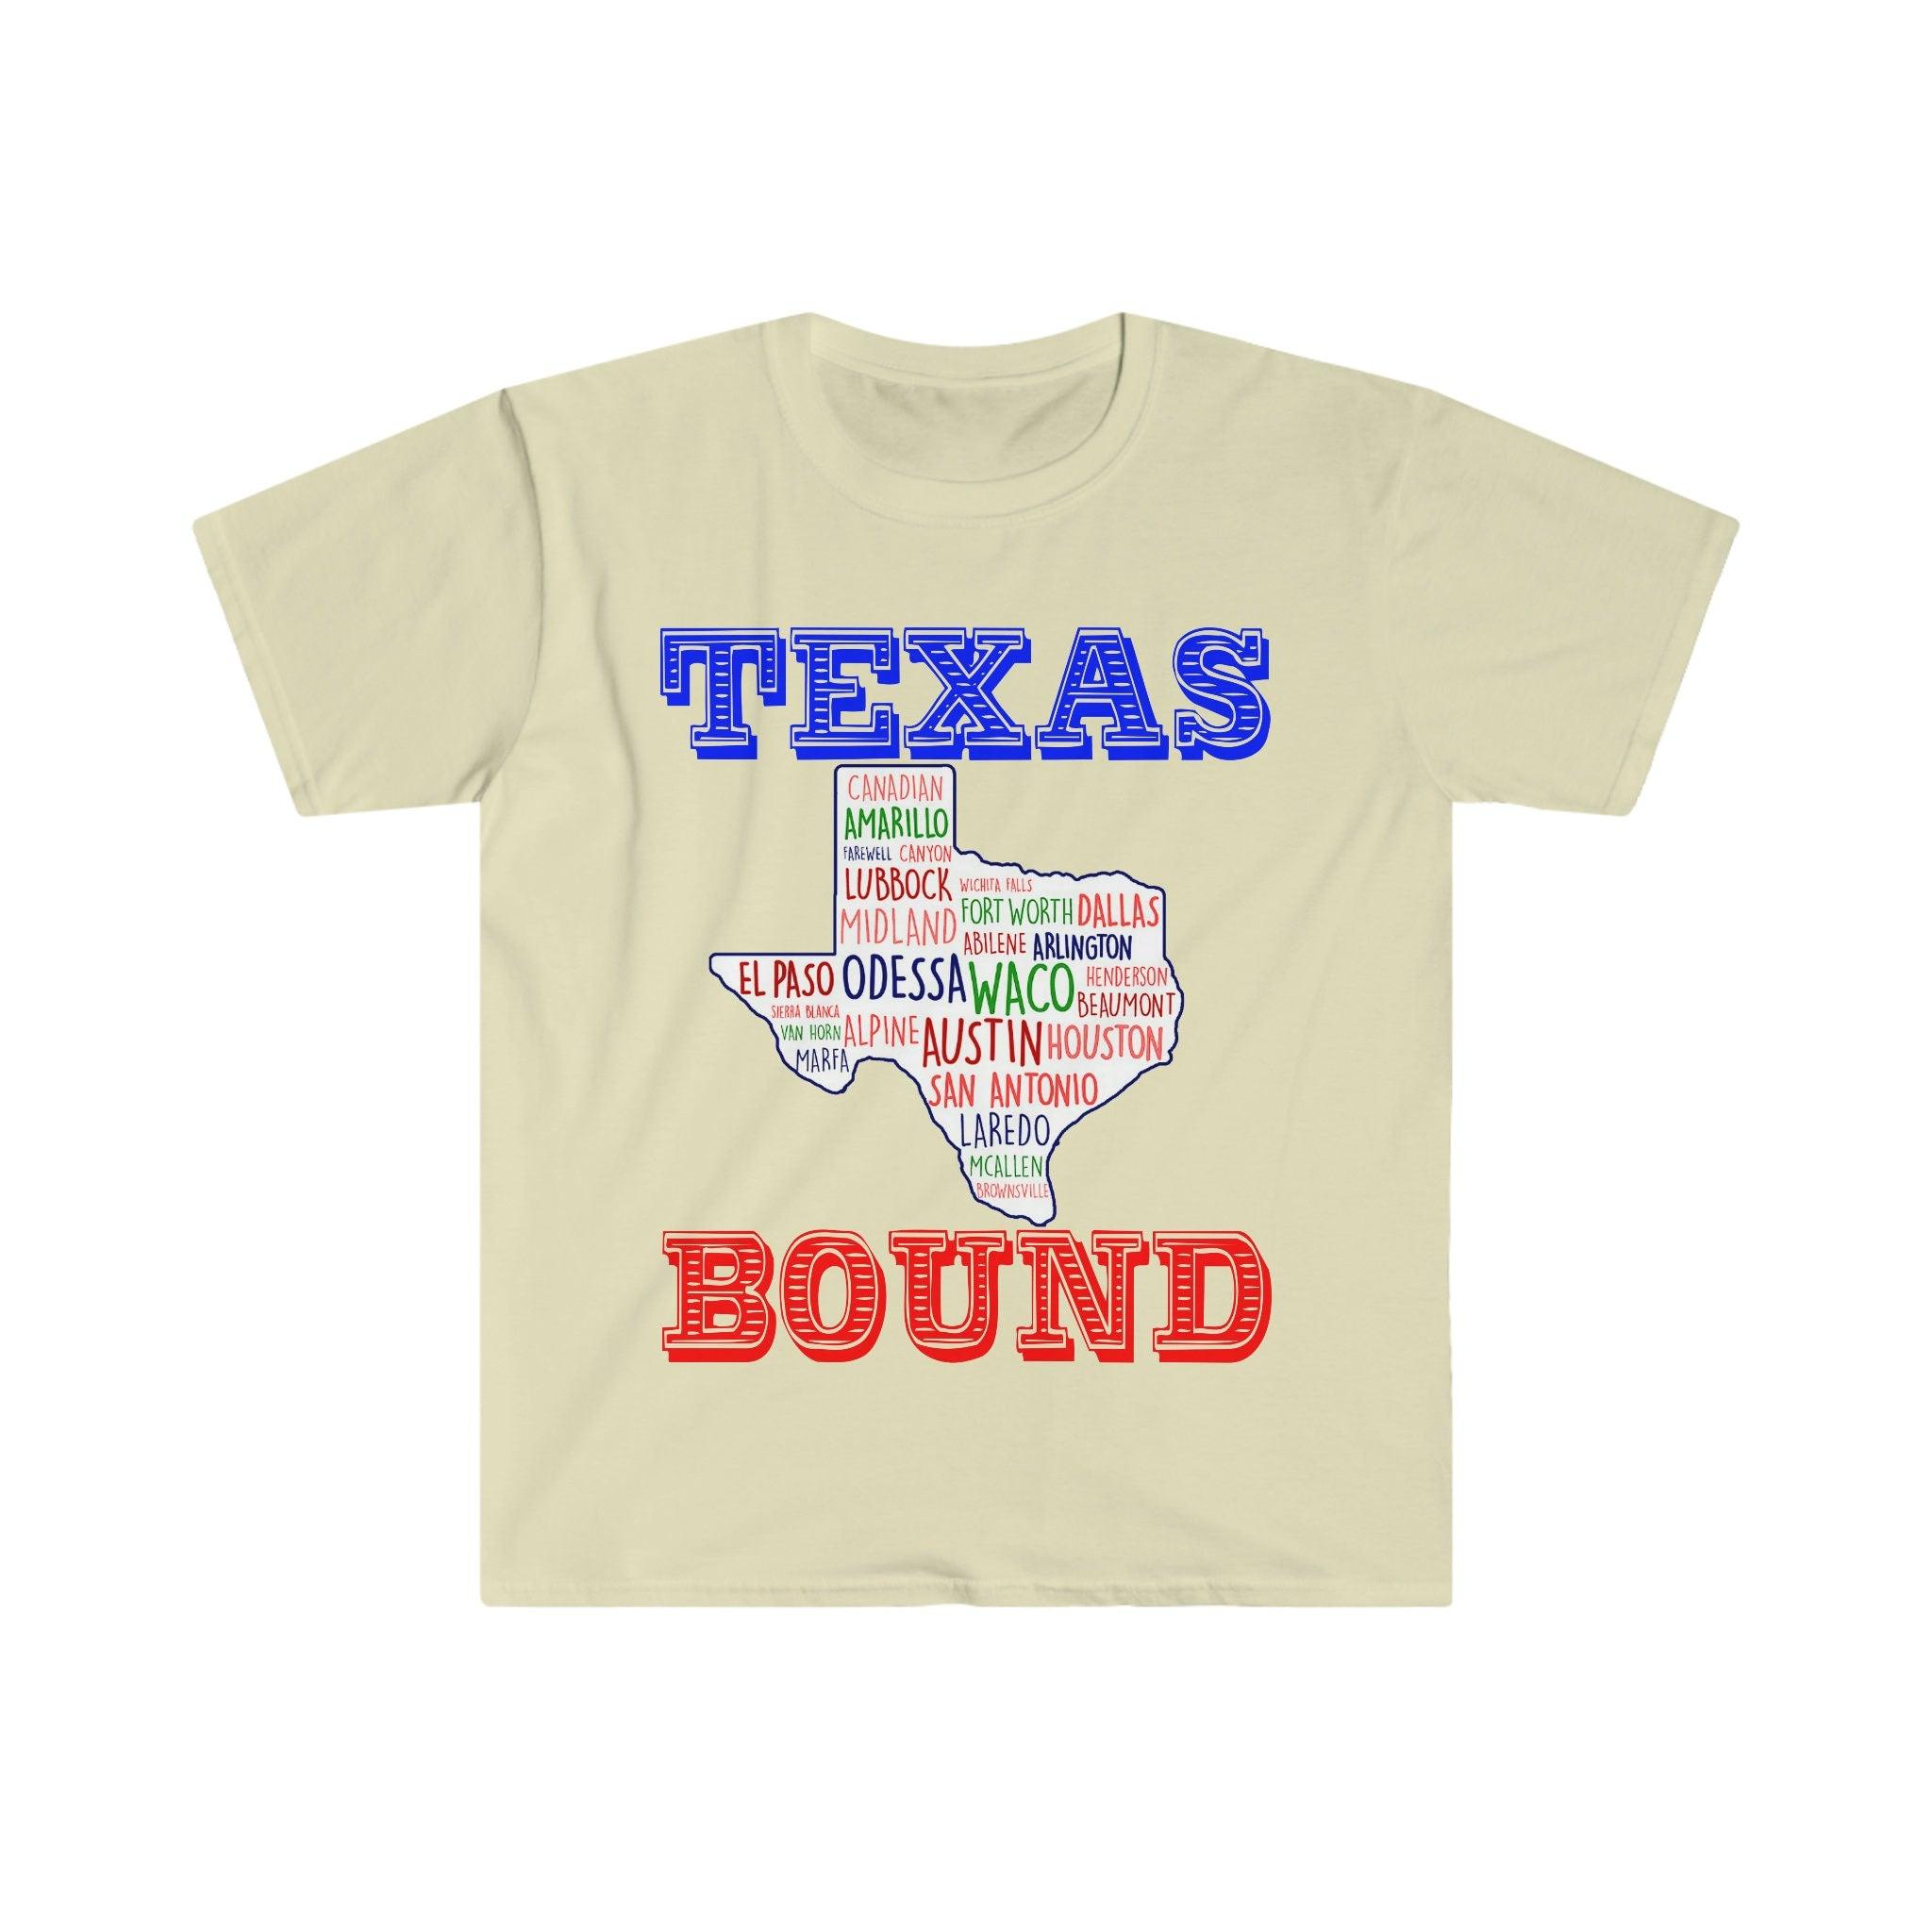 Texas Bound | Texas Places T-krekli | Teksasas kartes T-krekli, pārcelšanās uz Ostinu , Laipni lūdzam Texas Gift, Texas Bound, Jaunums Teksasā, Pāreja uz DFW Beat Biden nodokļu kāpumu, Baidena nodokļu plāns, piekrastes liberālisms, Hjūstona, pārcelšanās uz Ostinu, Pārcelšanās uz DFW, Moving To Texas, Moving to Texas Mug, New in Texas, Republican, Tee, tees, Texas bound, texas girl, texas republican in - plusminusco.com